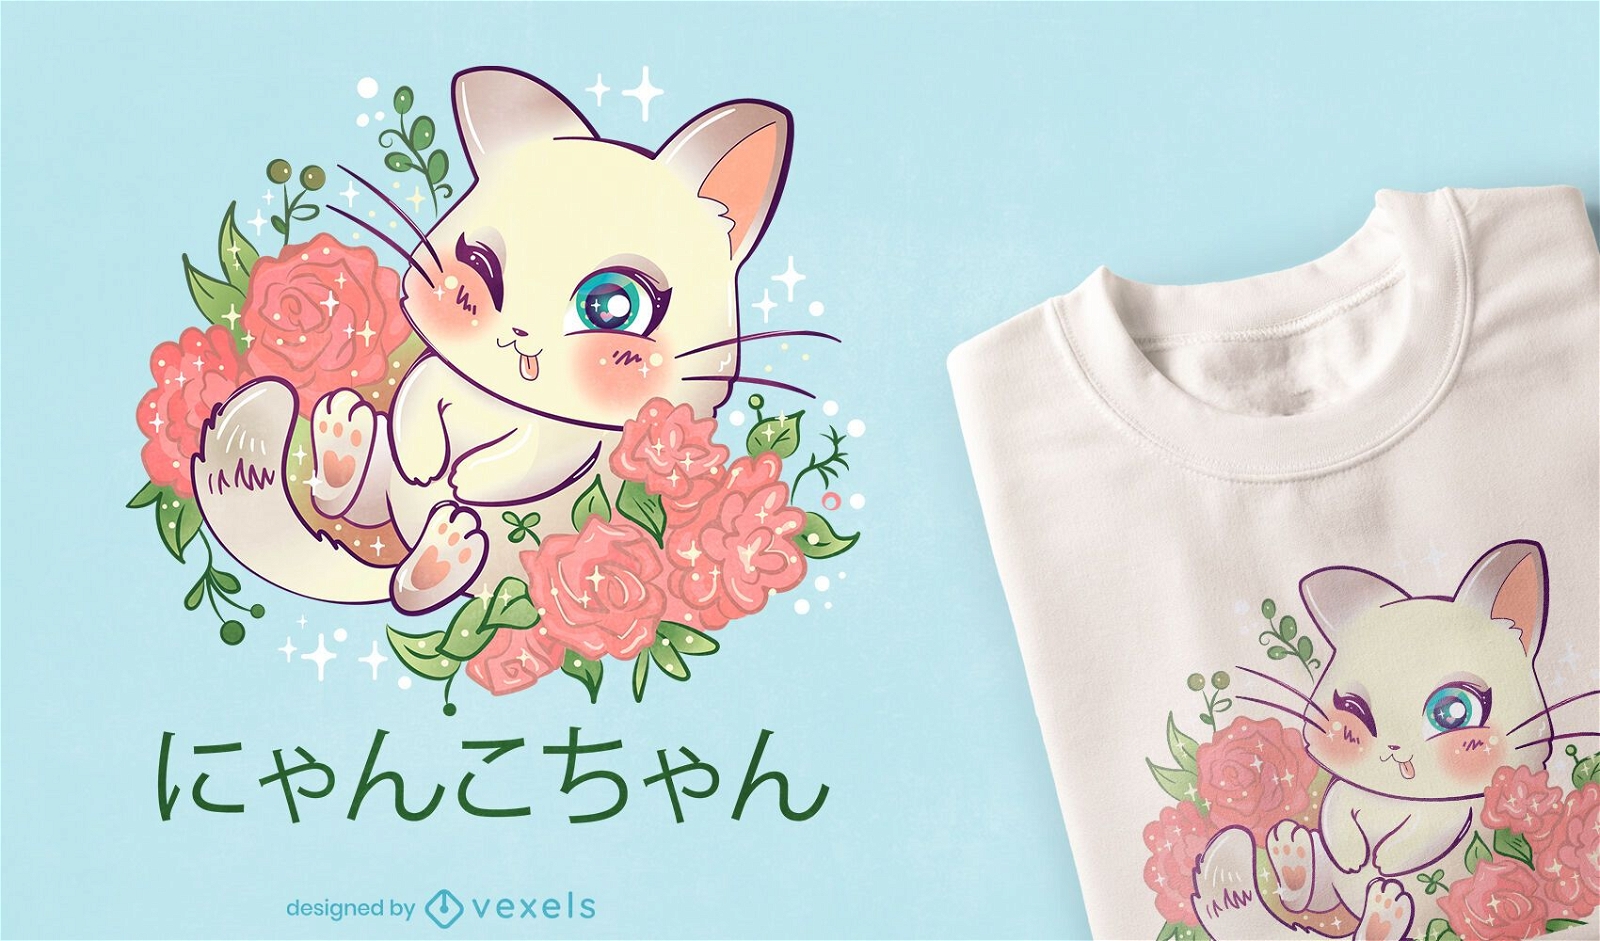 Dise?o de camiseta de gatito kawaii